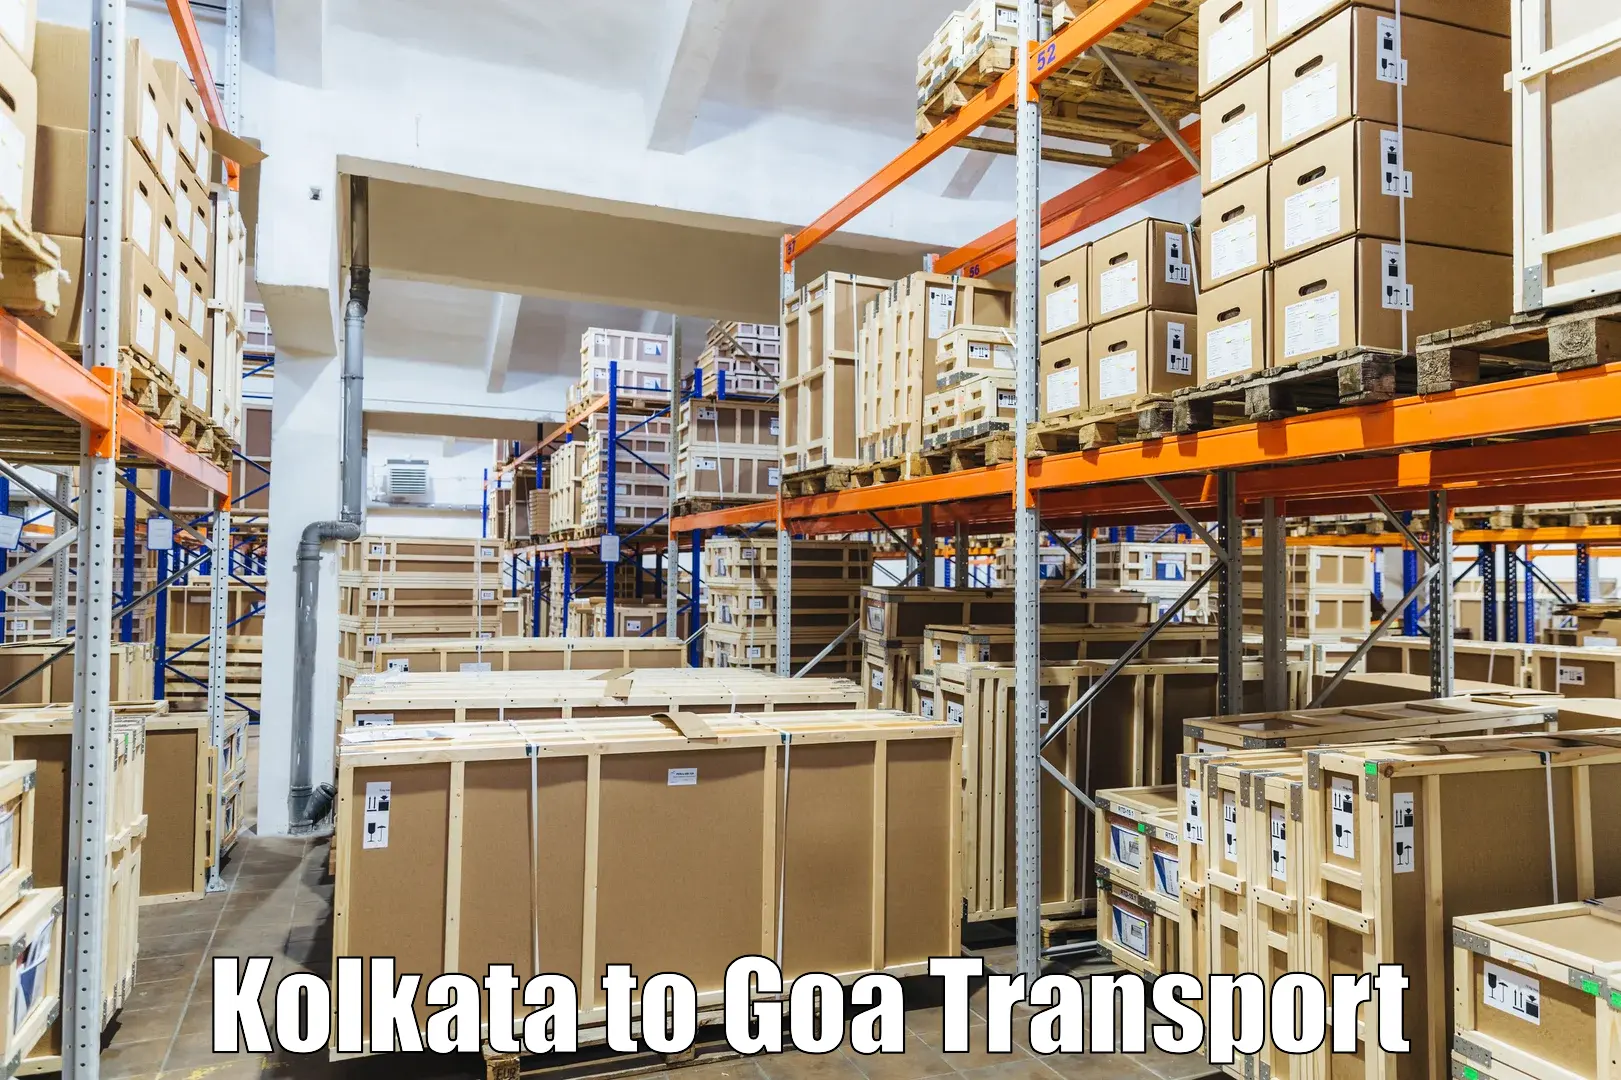 Express transport services Kolkata to NIT Goa